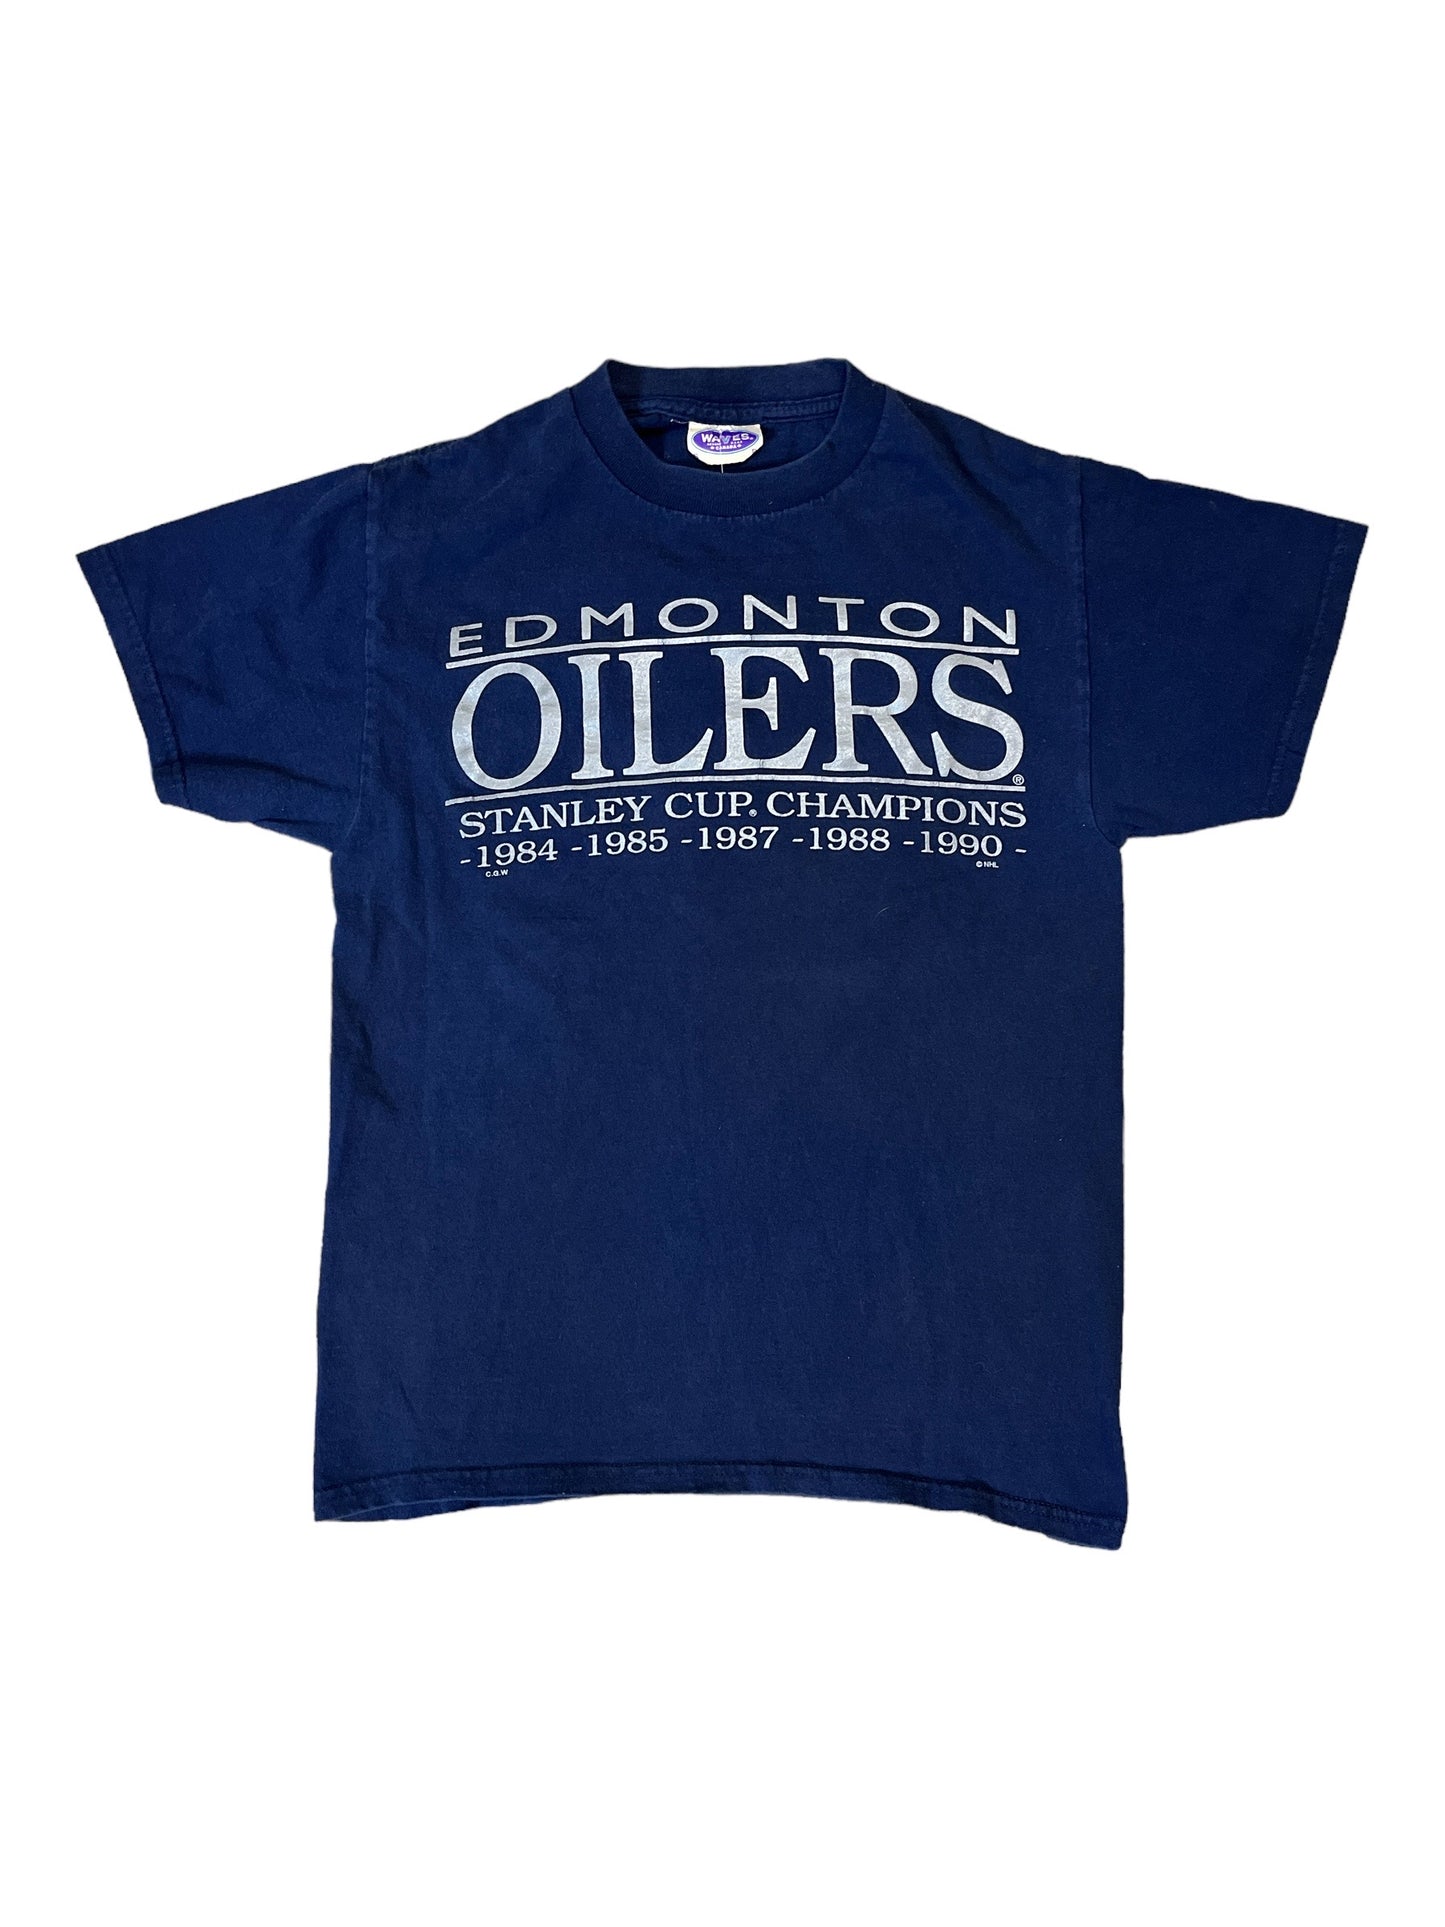 Vintage Waves Edmonton Oilers Stanley Cup Champs Tee